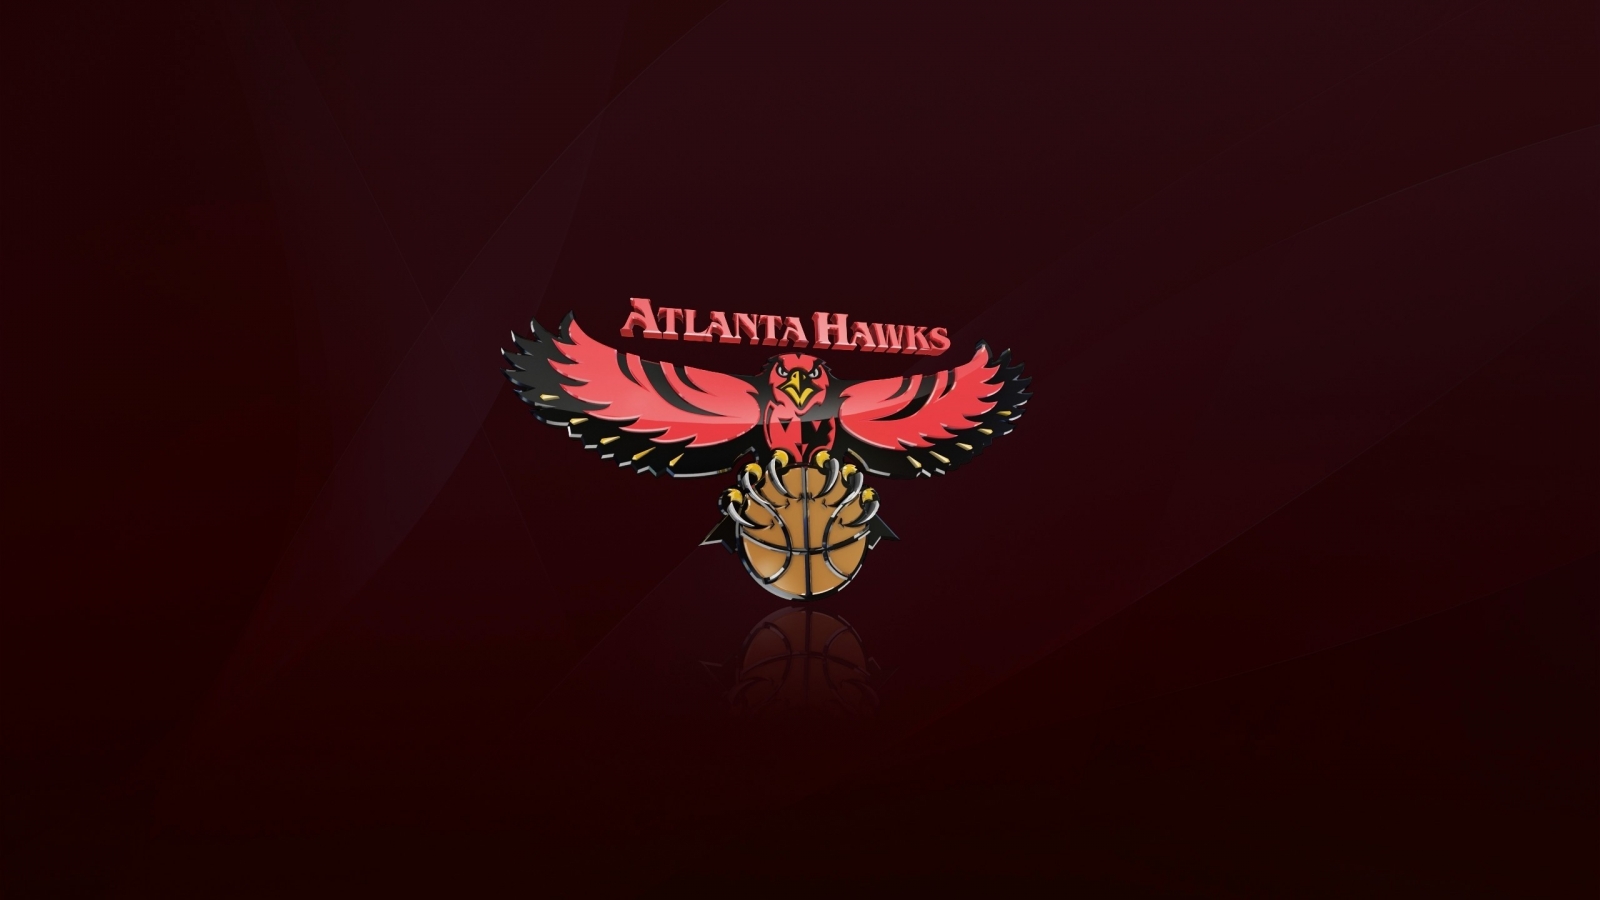 Atlanta Hawks Logo for 1600 x 900 HDTV resolution